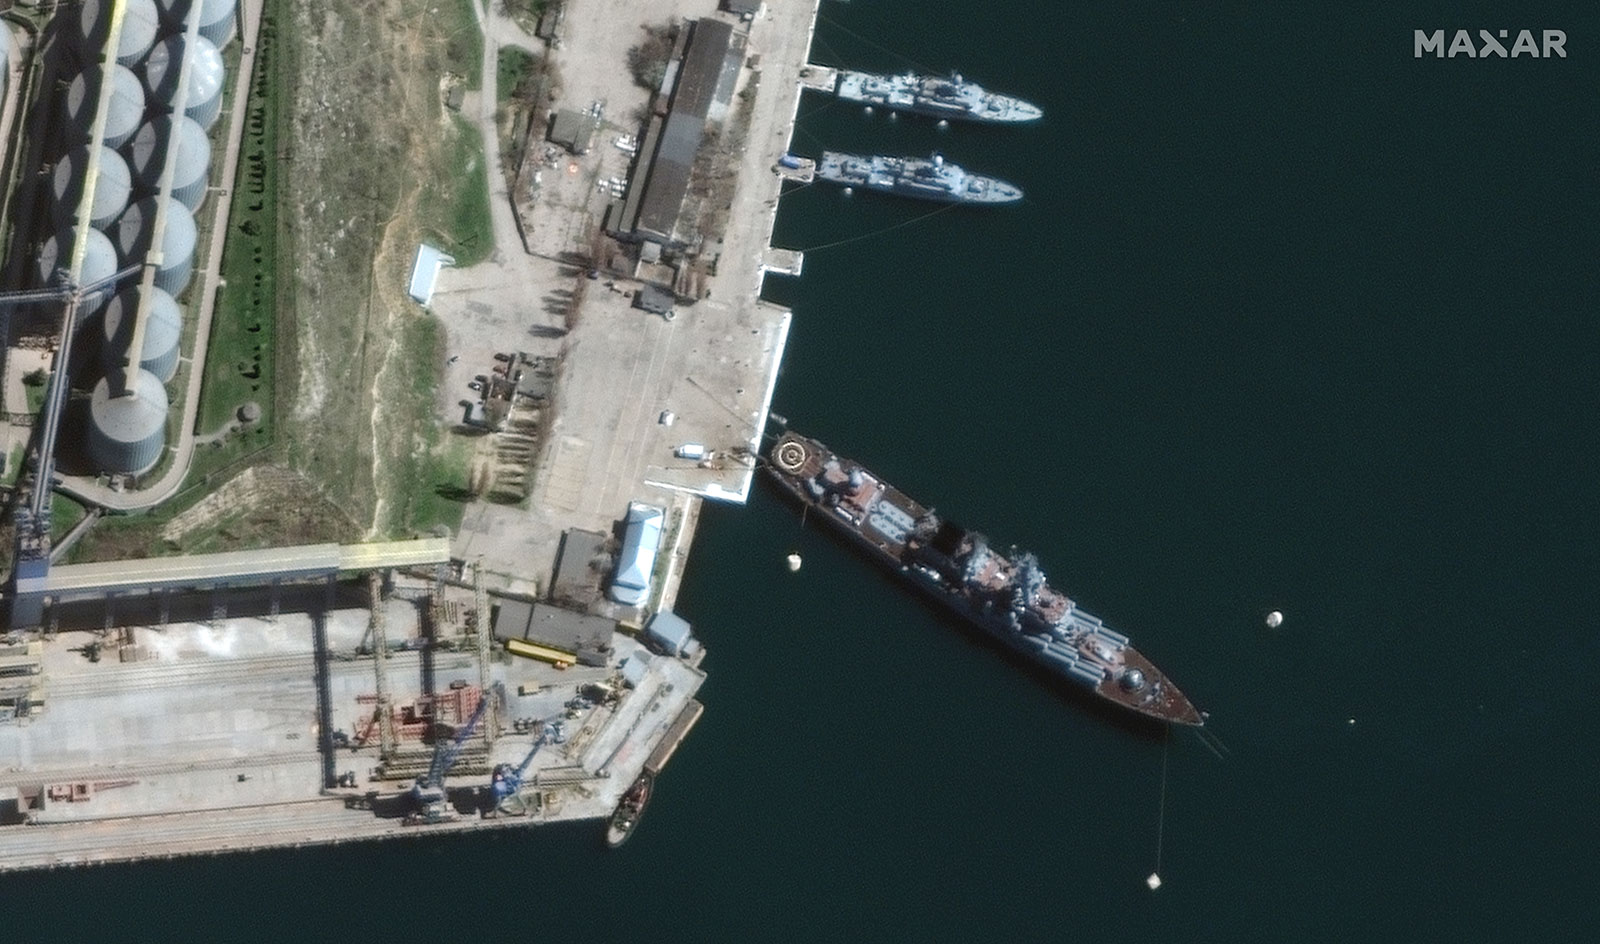 卫星图像显示俄罗斯军舰莫斯科号 4 月 7 日在克里米亚塞瓦斯托波尔港。